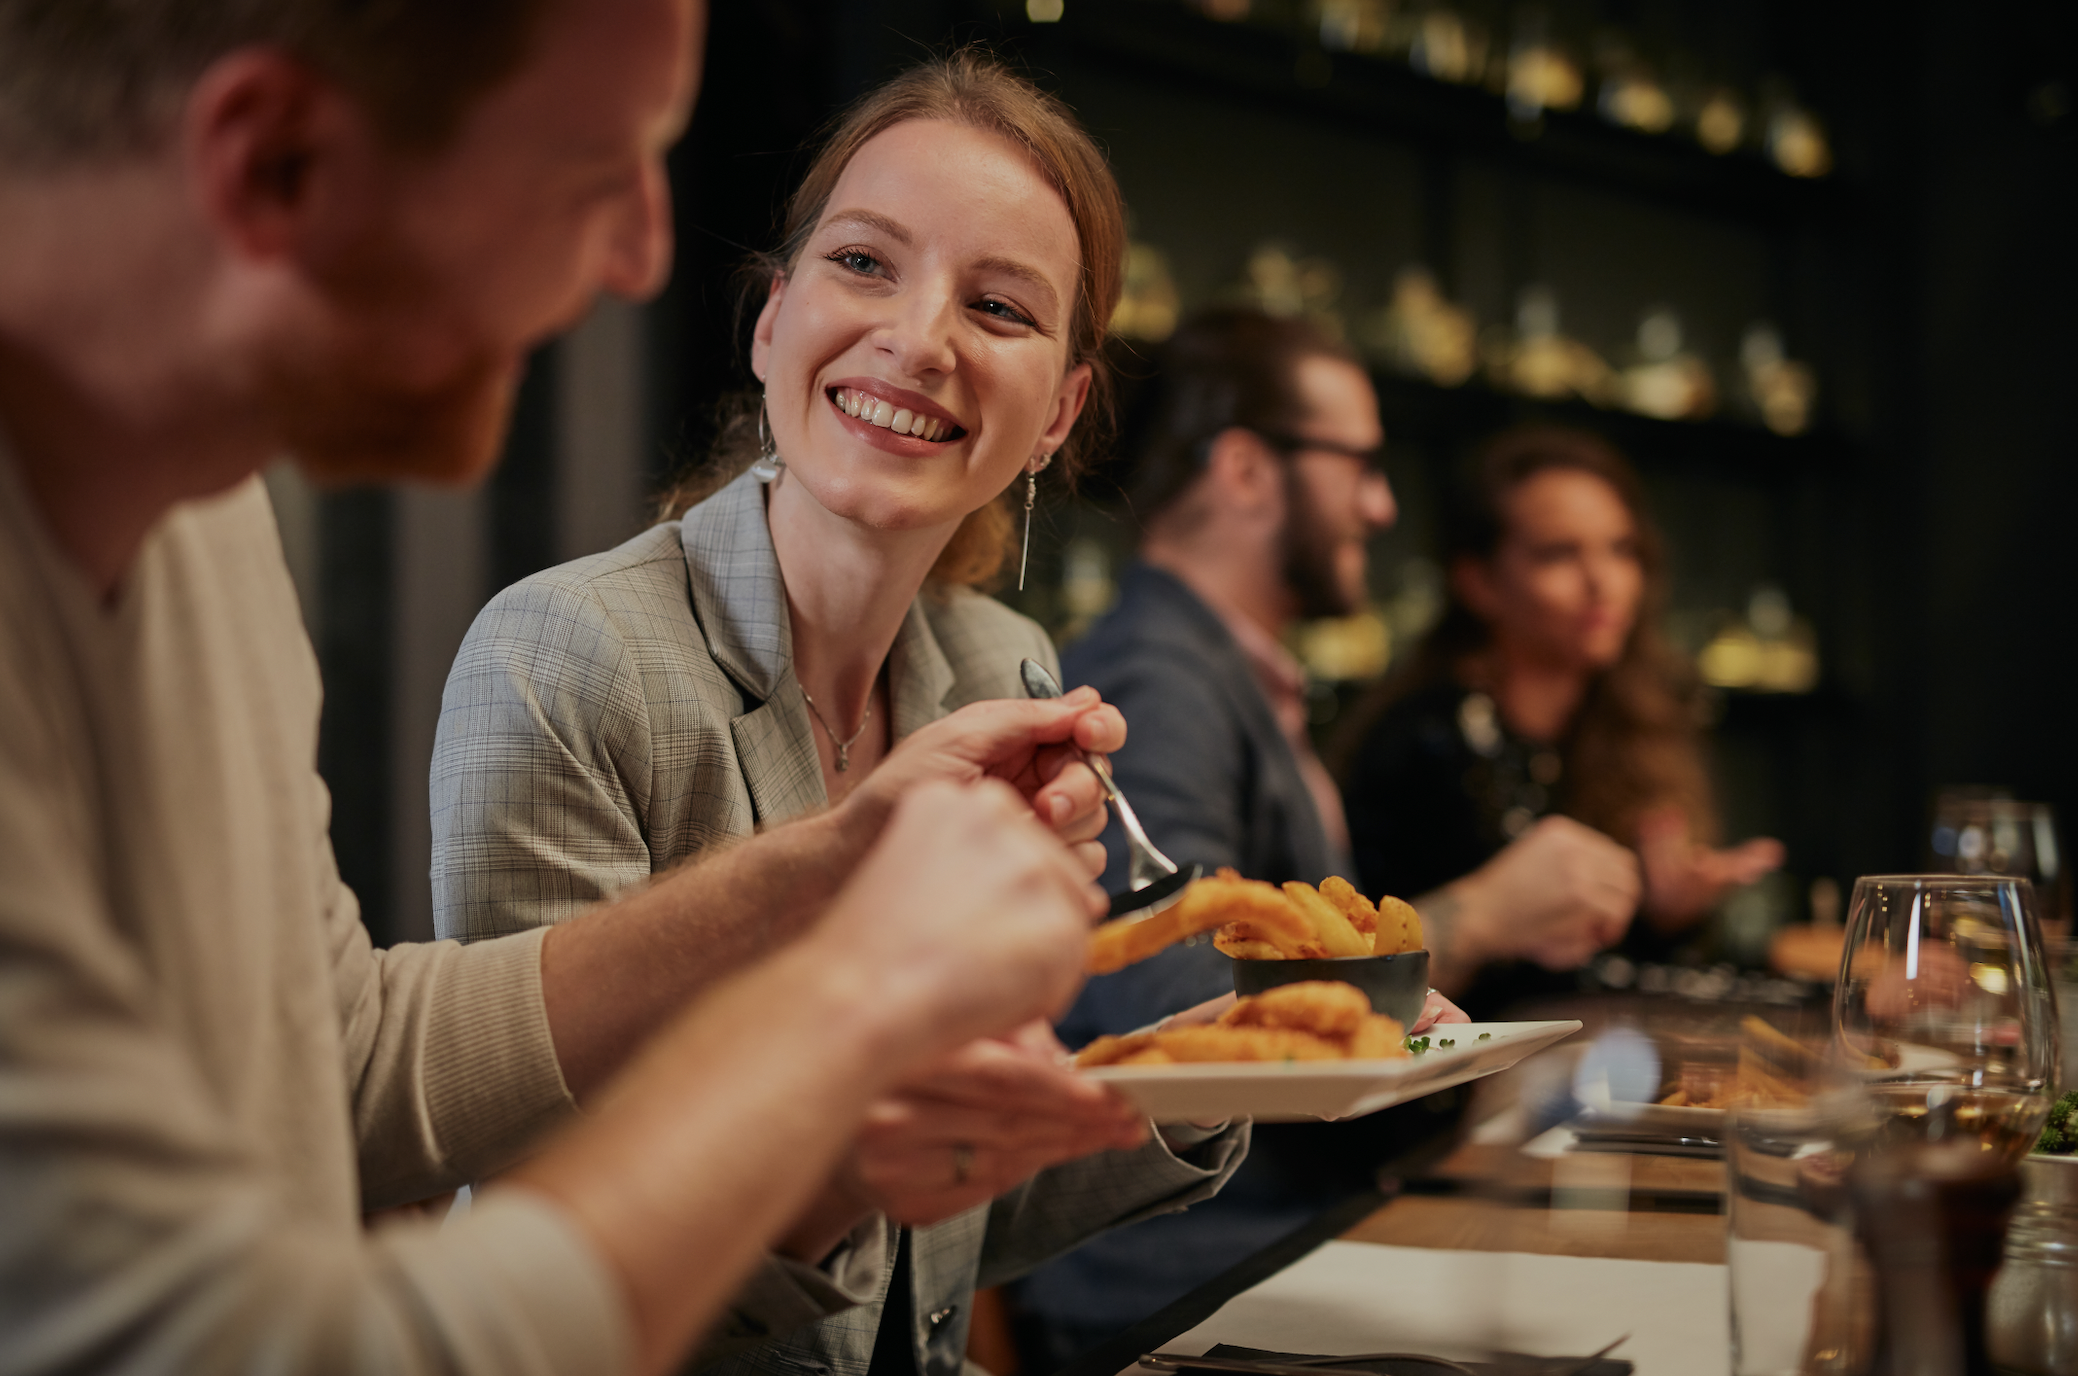 Une jeune femme sourit à l'homme dans le restaurant | Source : Shutterstock